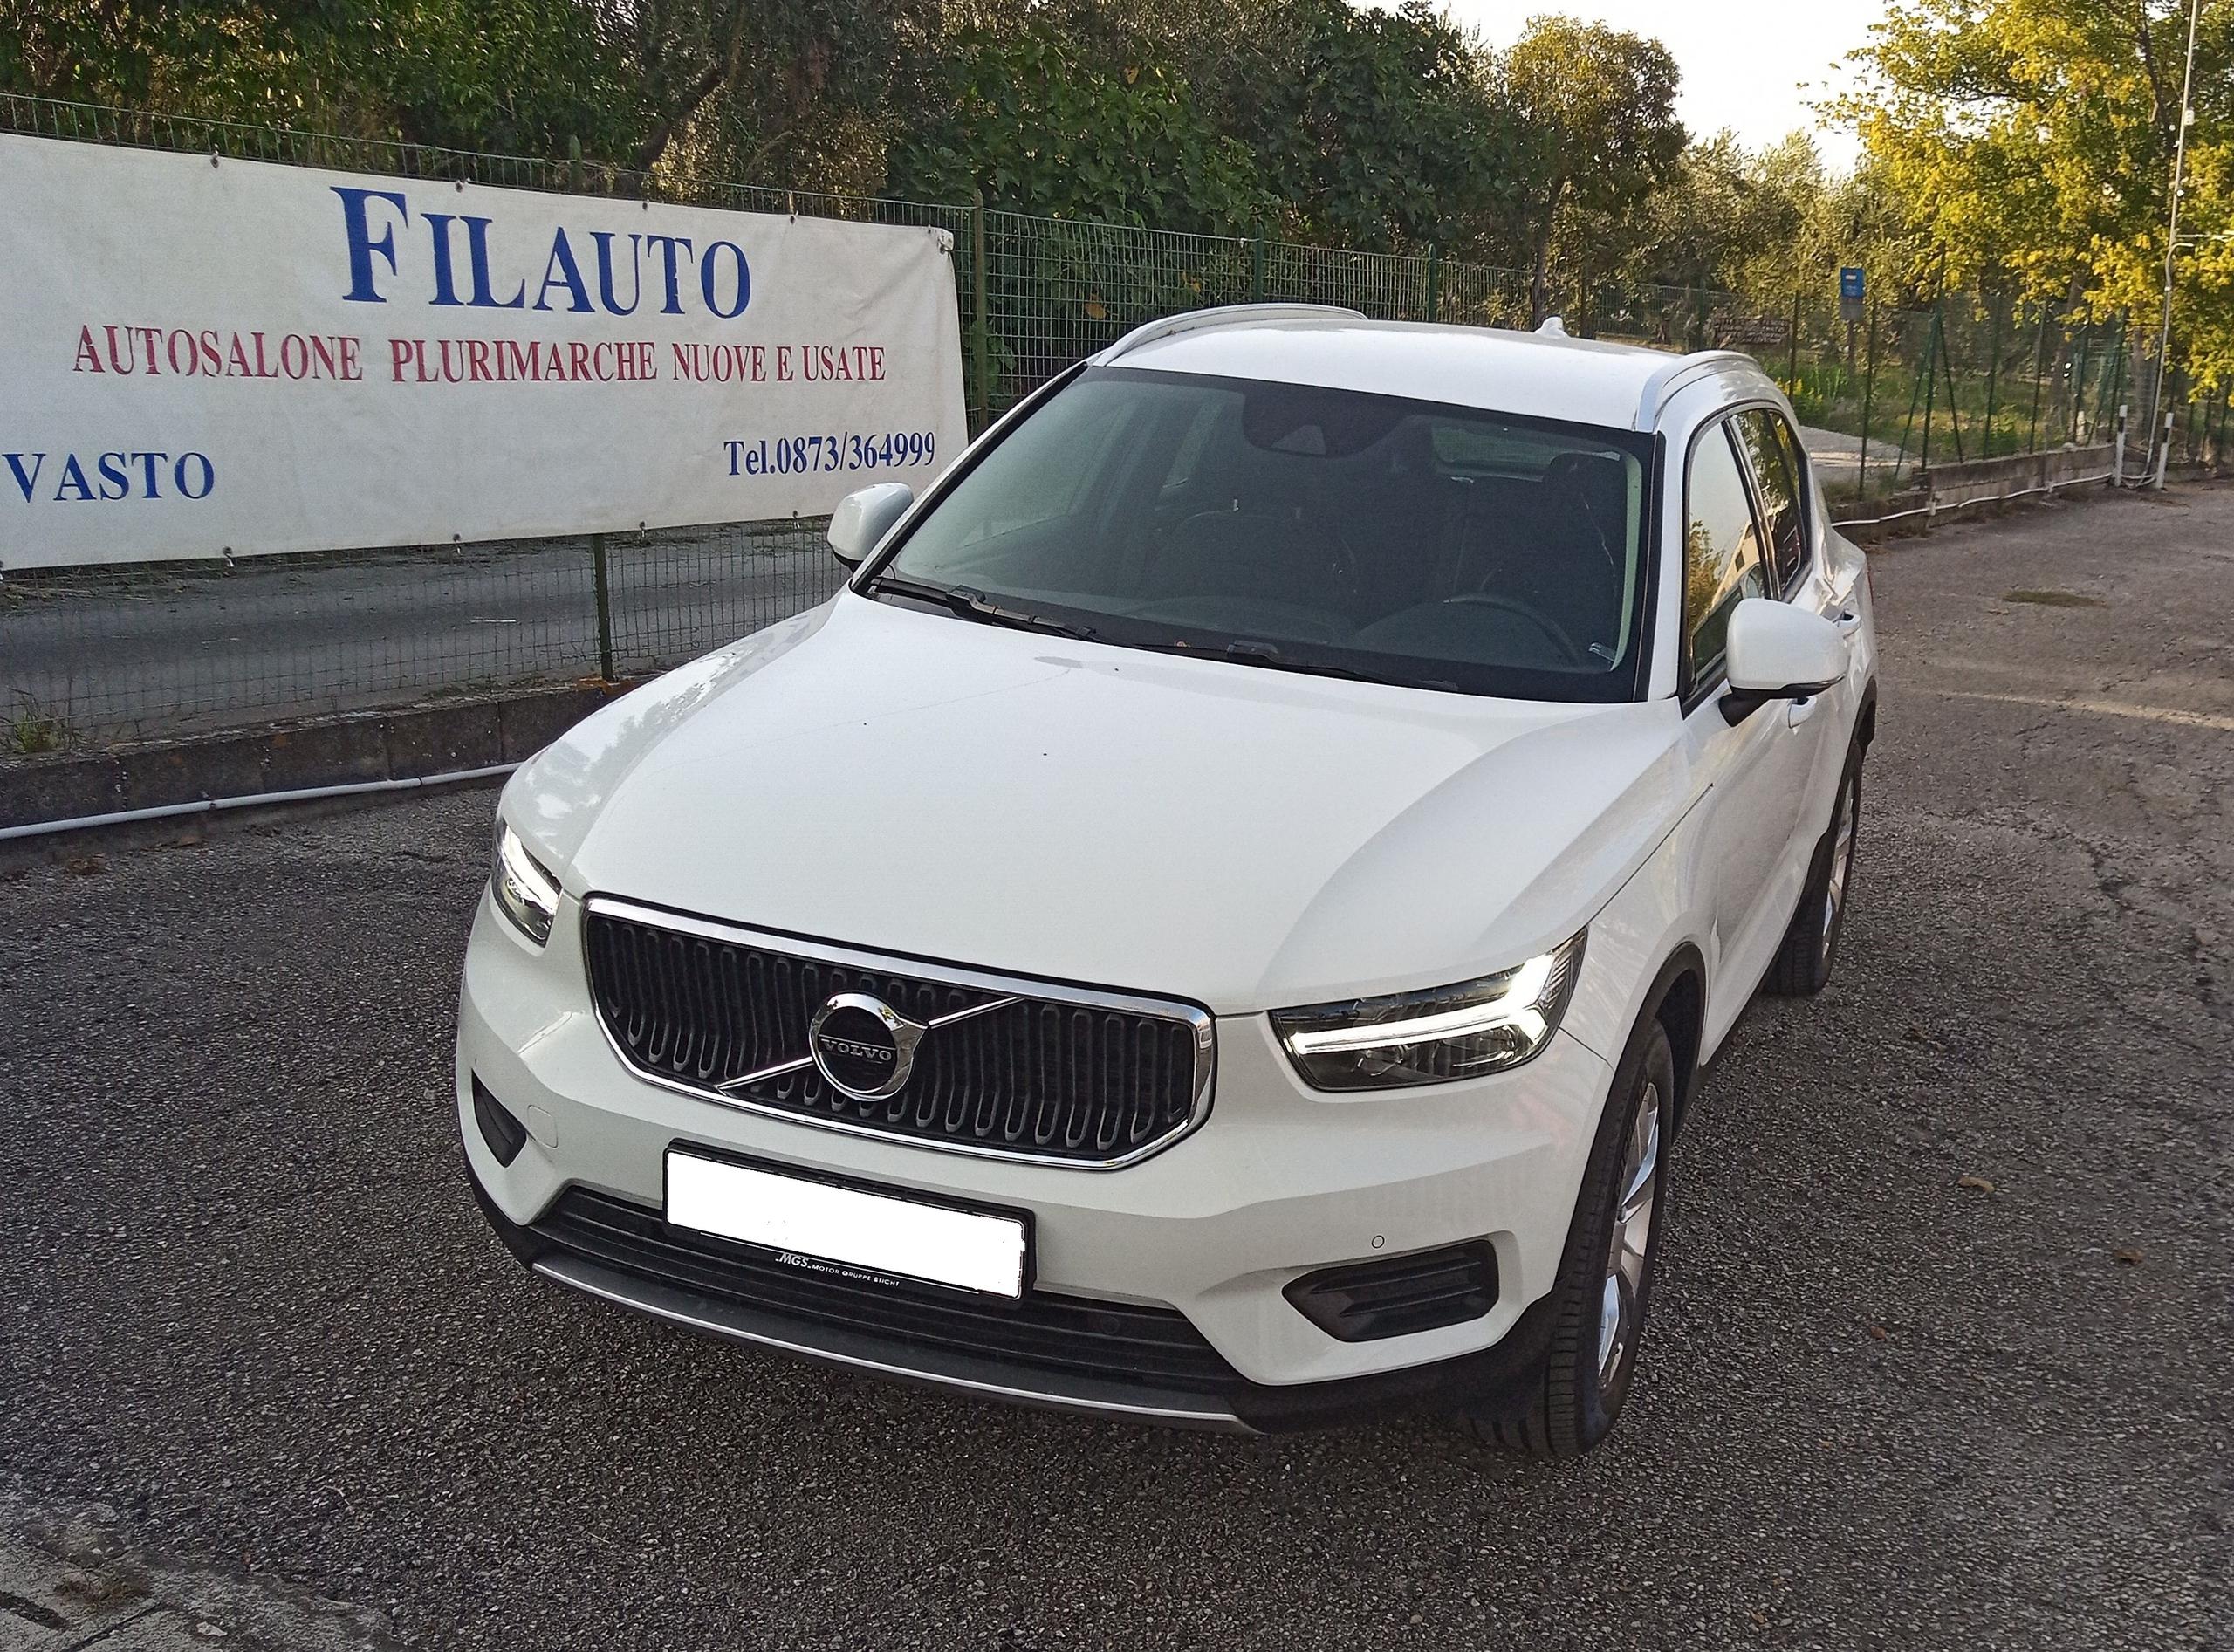 Volvo xc40 d3 Vasto (CH) €32.000  10/2019